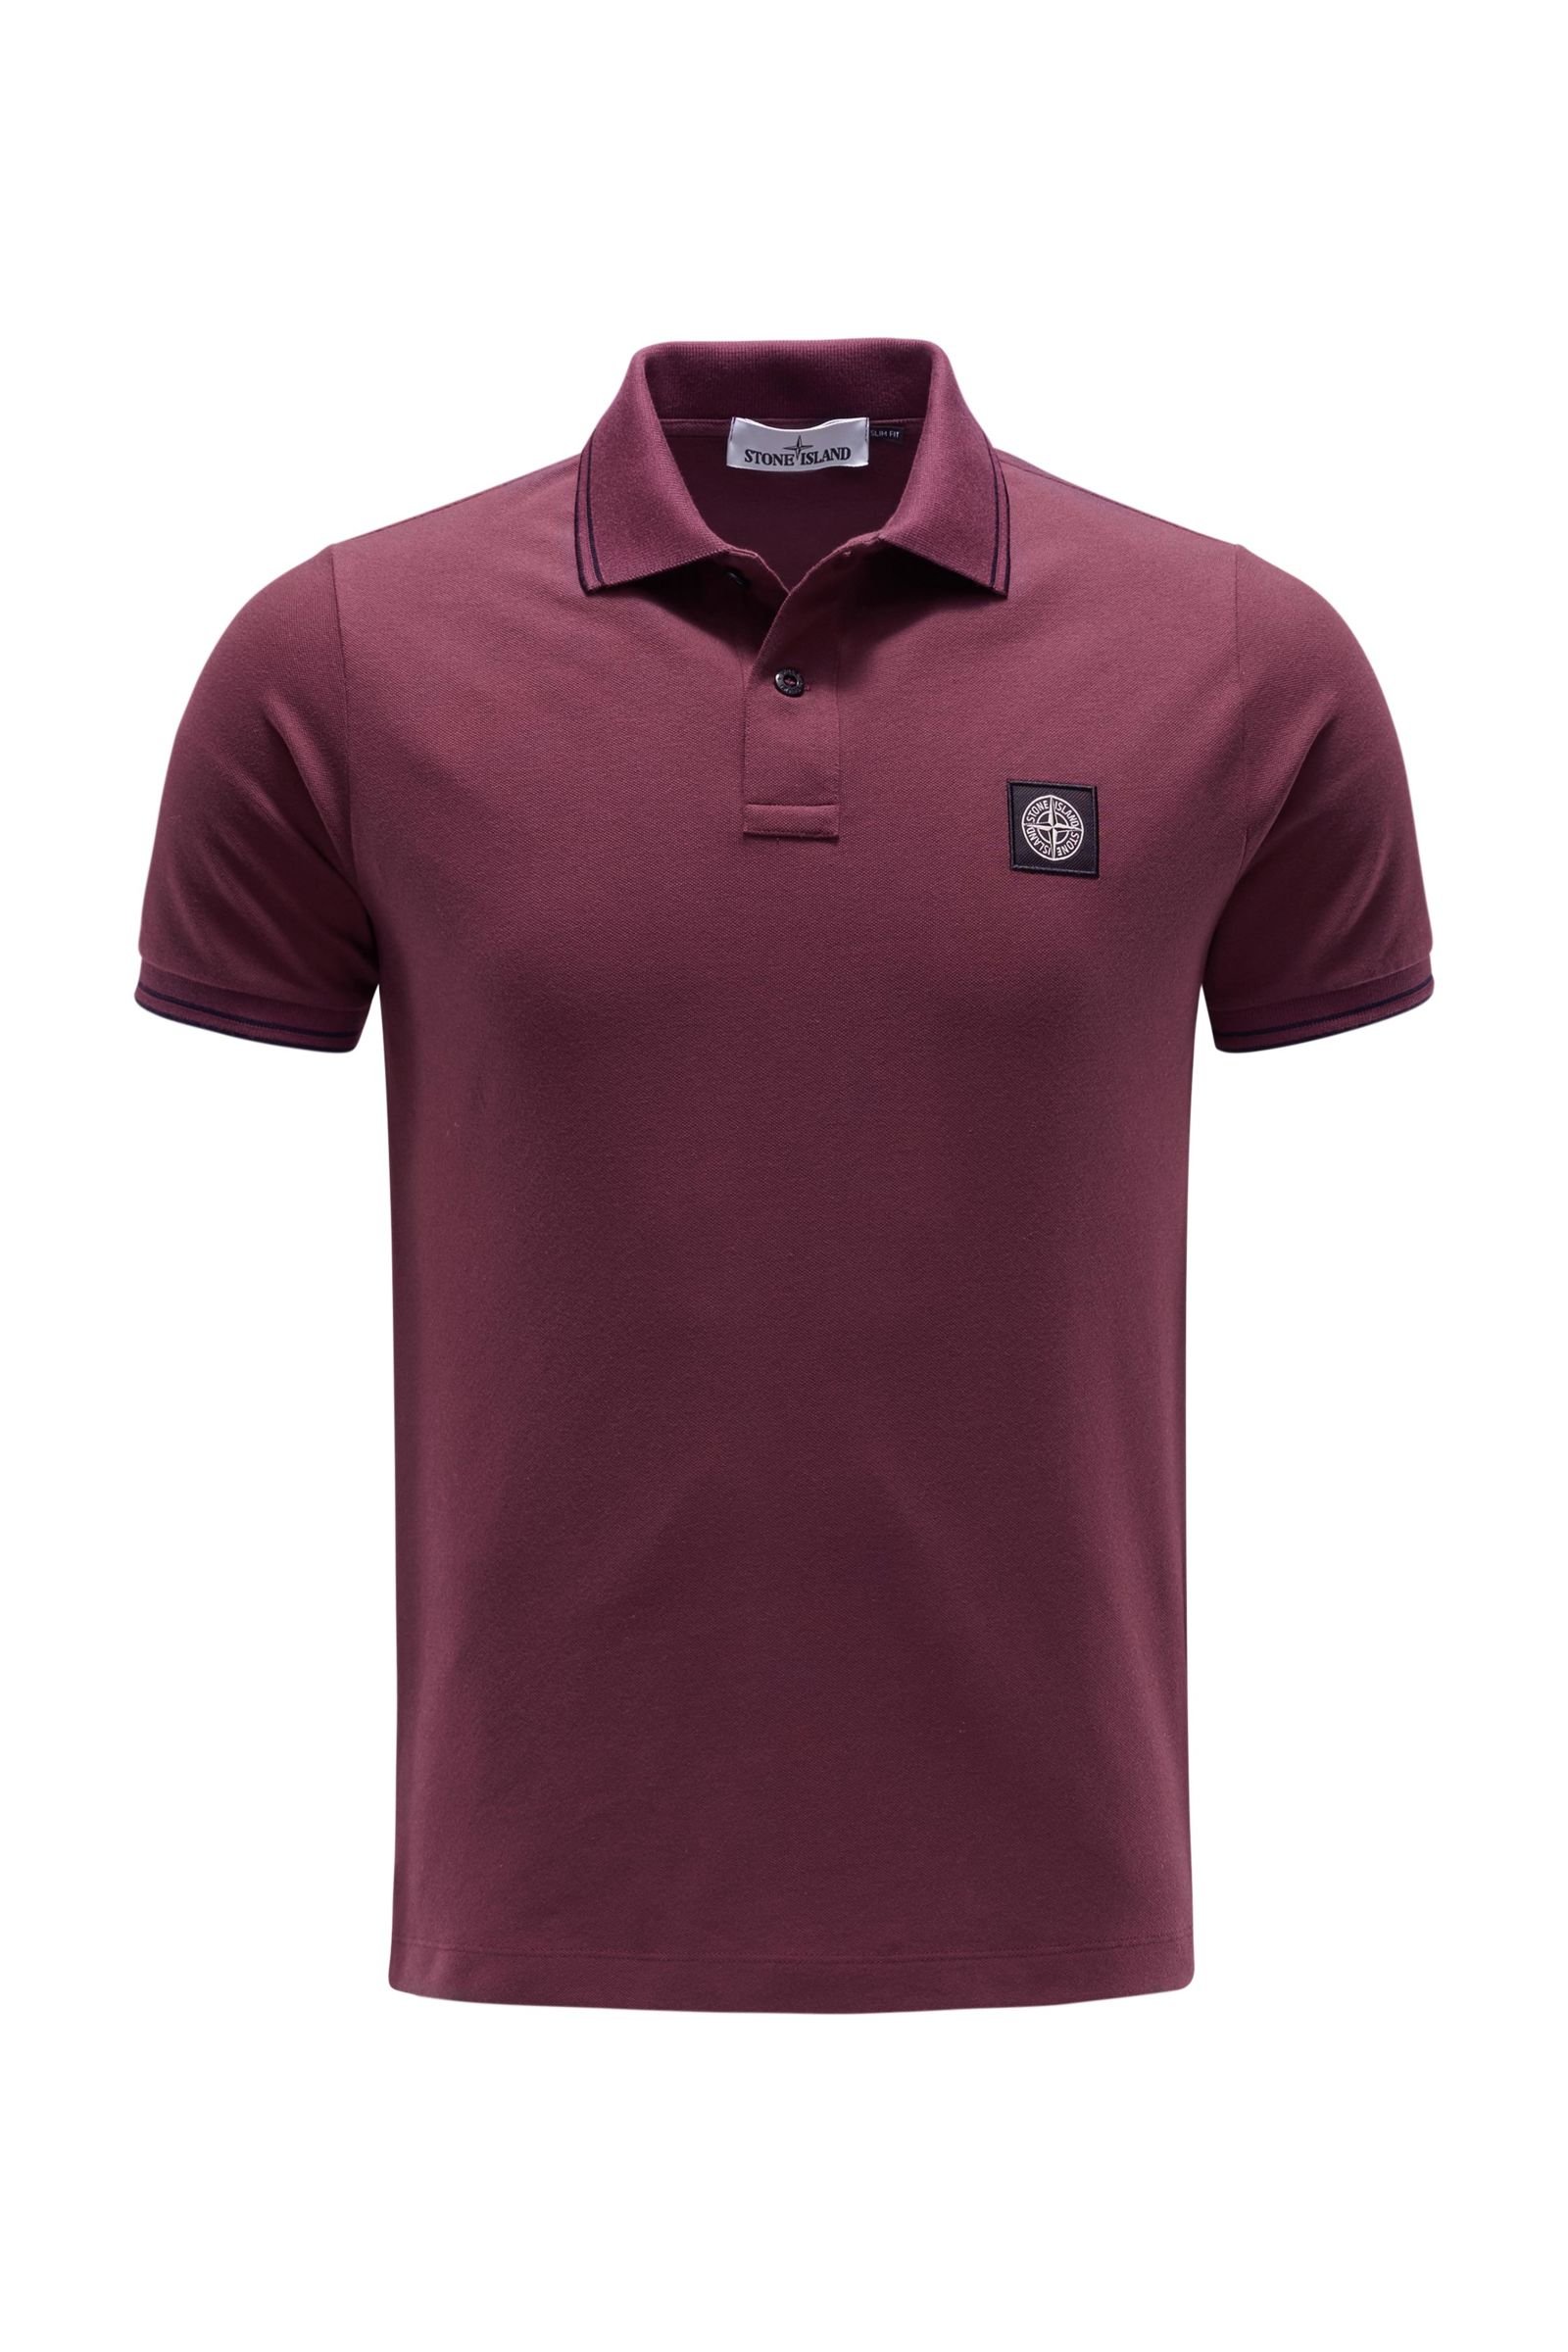 Polo shirt burgundy